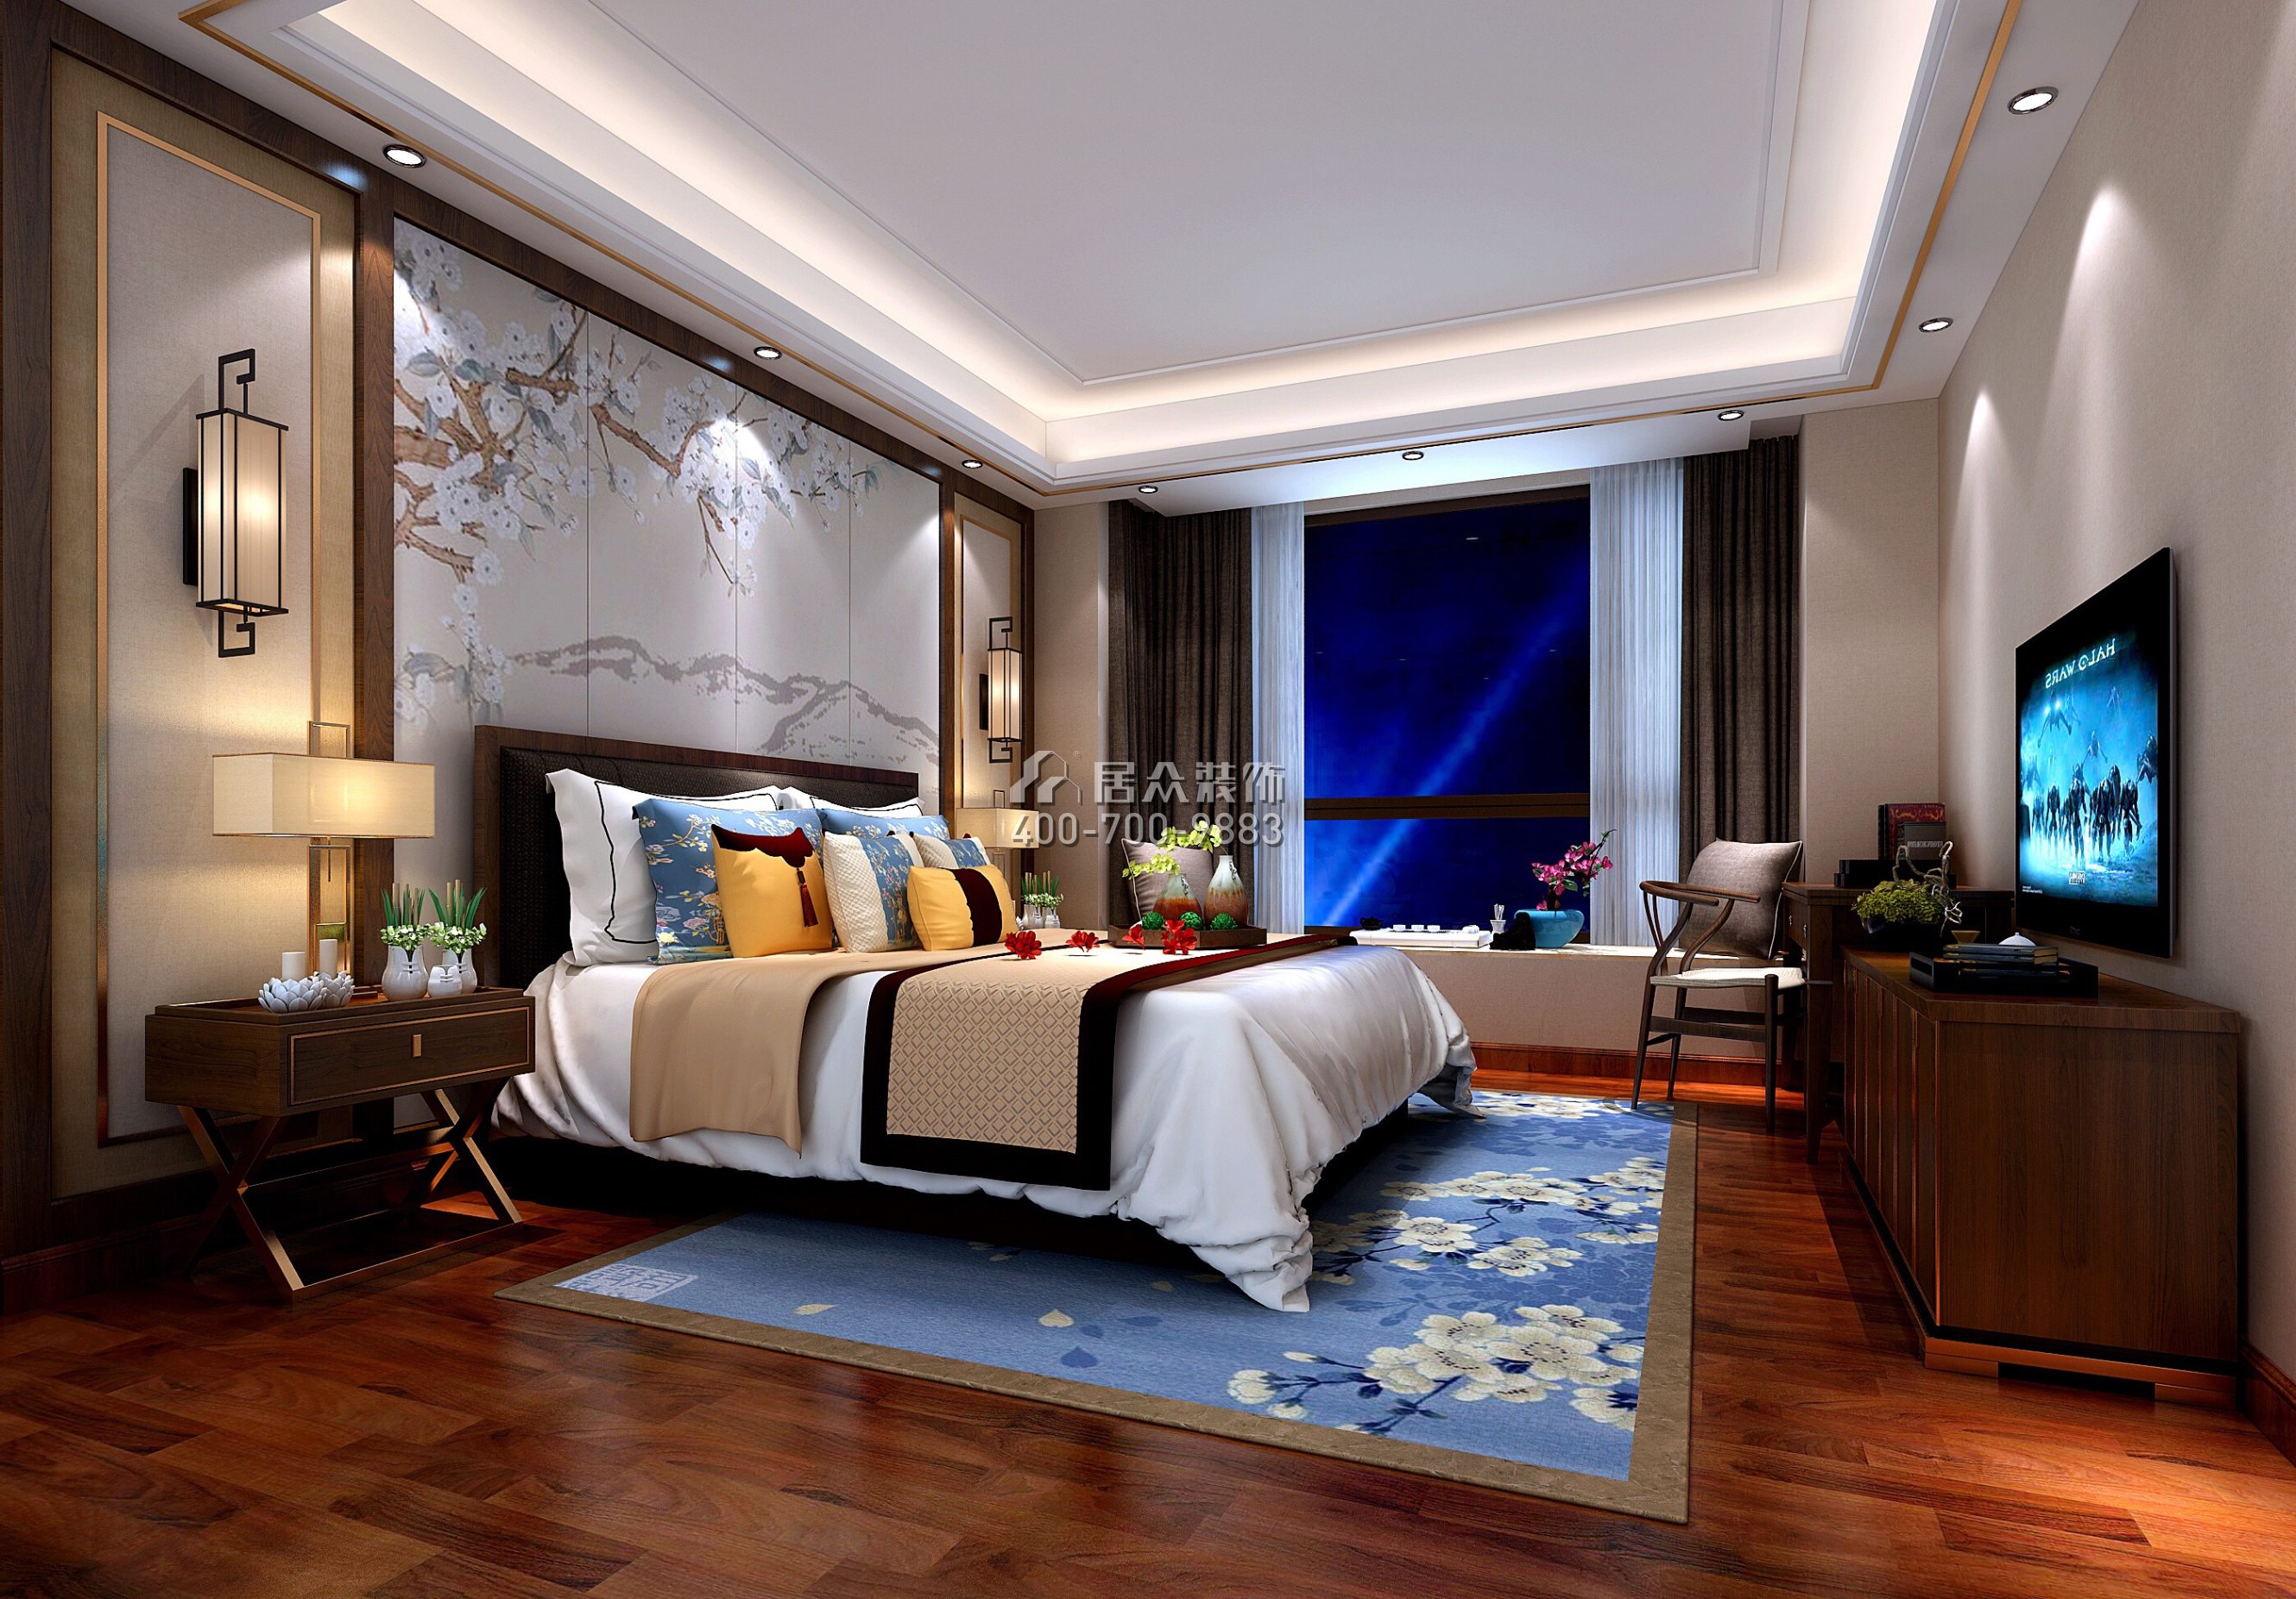 博罗自建别墅320平方米中式风格别墅户型卧室装修效果图